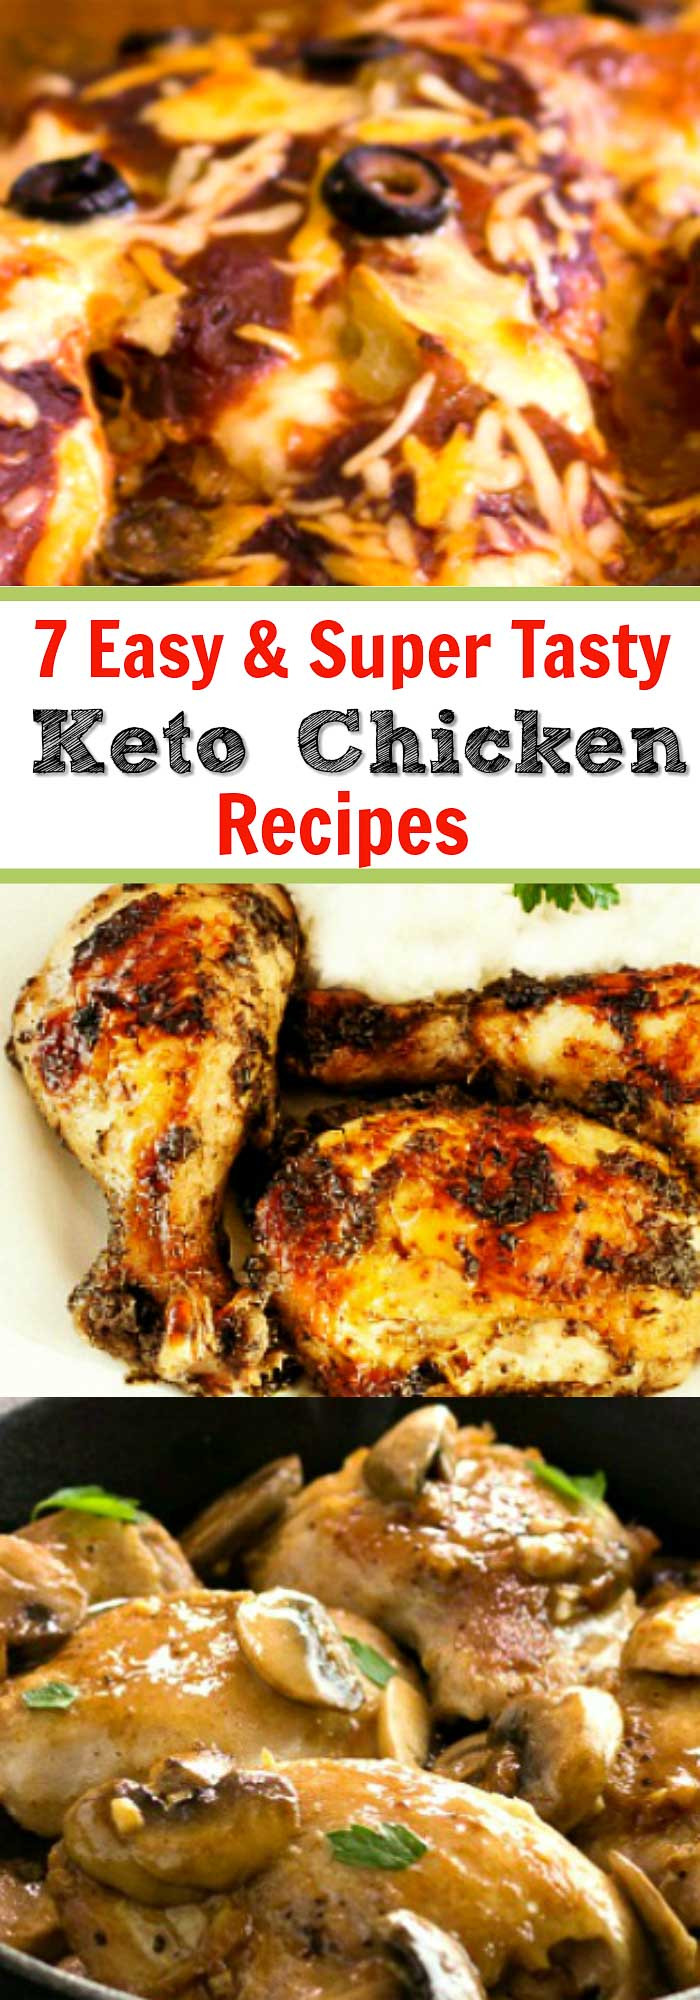 Easy Keto Chicken Recipes
 7 Best Easy Keto Chicken Recipes